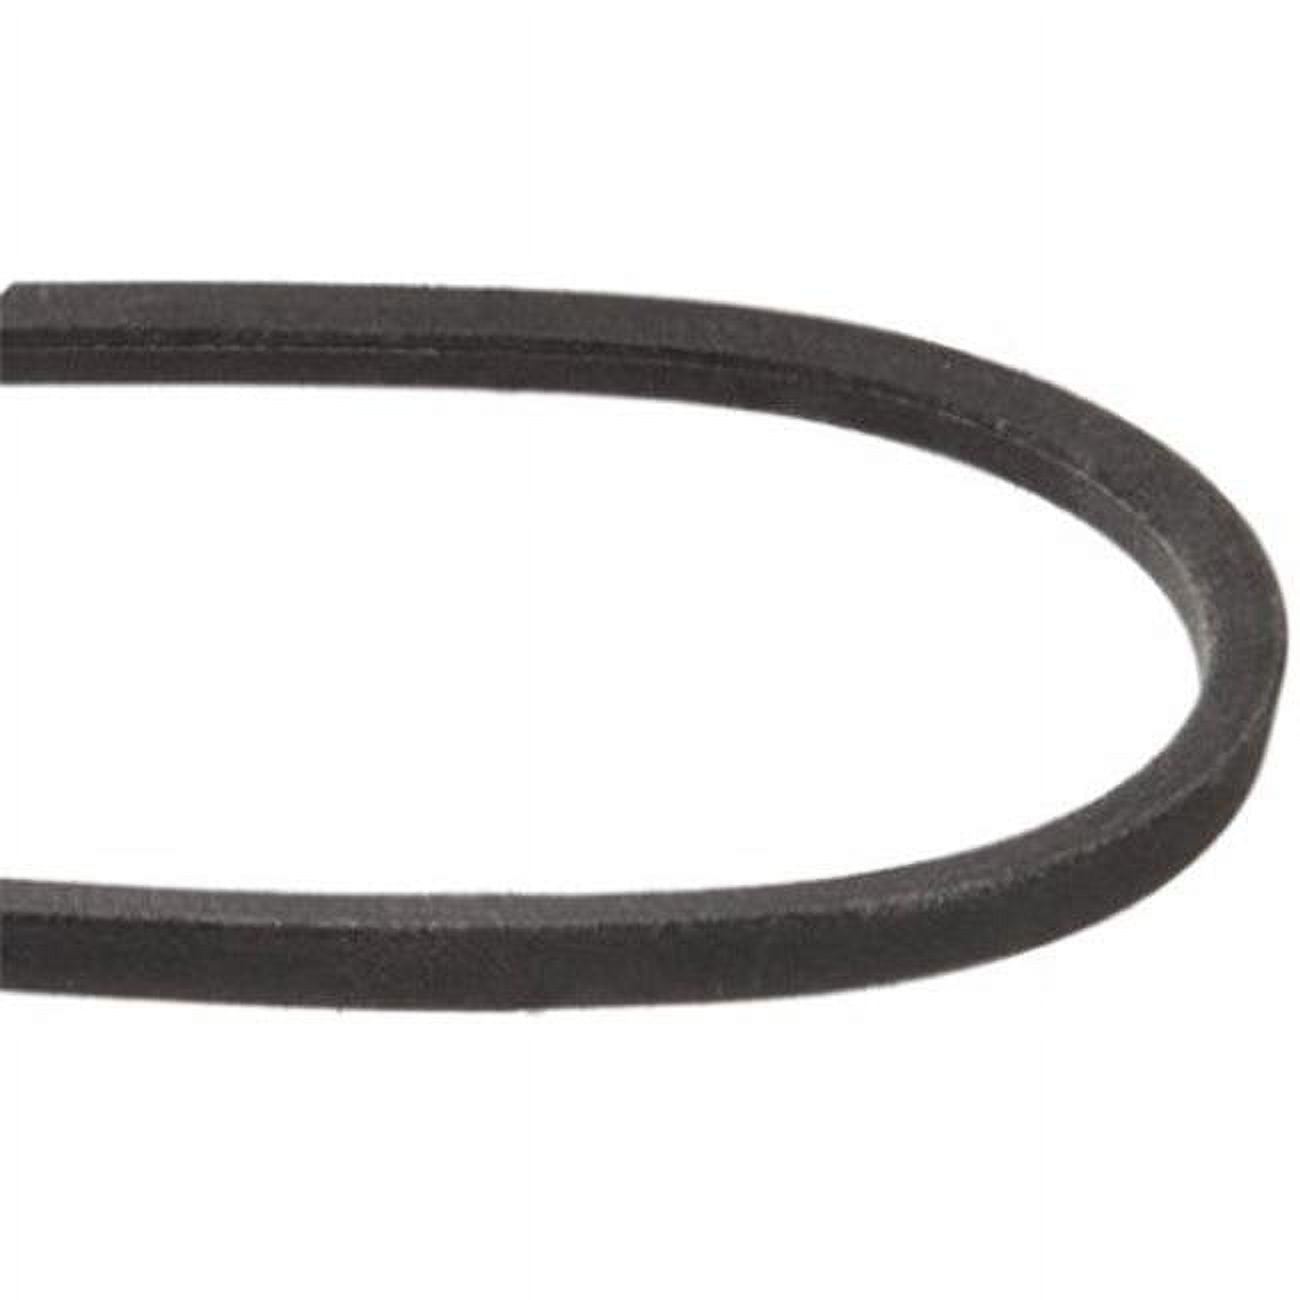 Mxv4-320 0.5 In. Heavy-duty Lawn & Garden Equipment Belt, Black